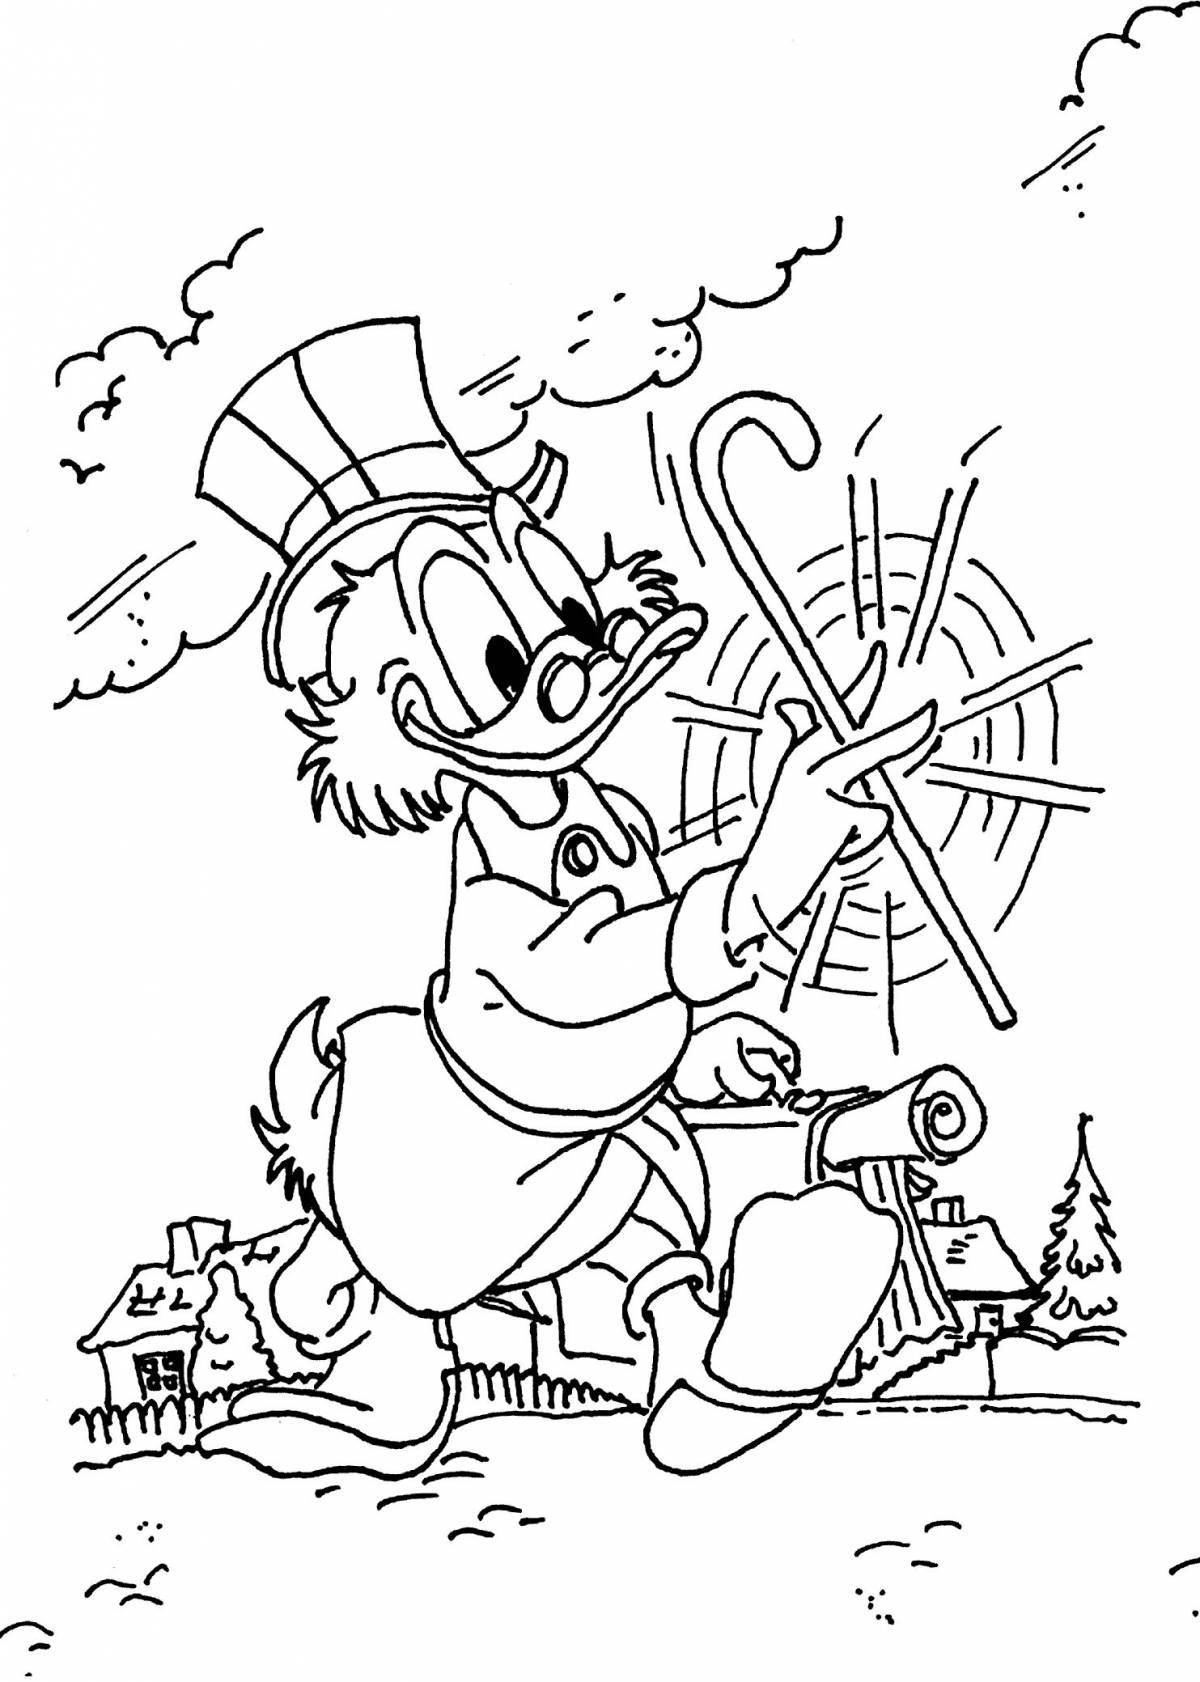 Fancy coloring scrooge